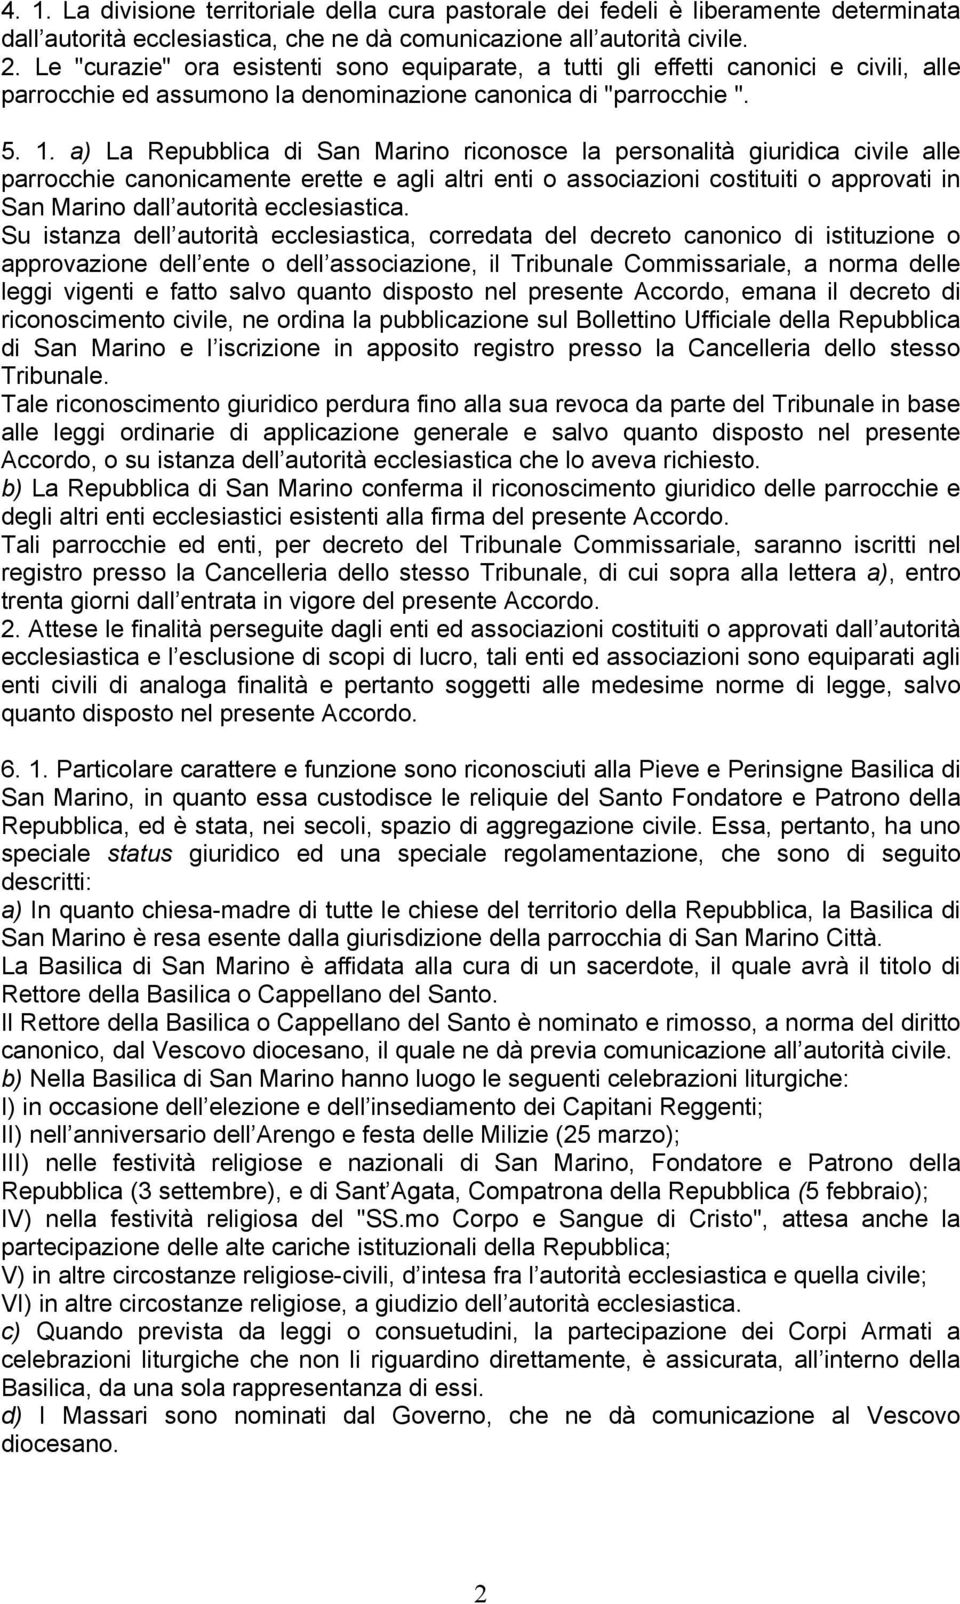 a) La Repubblica di San Marino riconosce la personalità giuridica civile alle parrocchie canonicamente erette e agli altri enti o associazioni costituiti o approvati in San Marino dall autorità